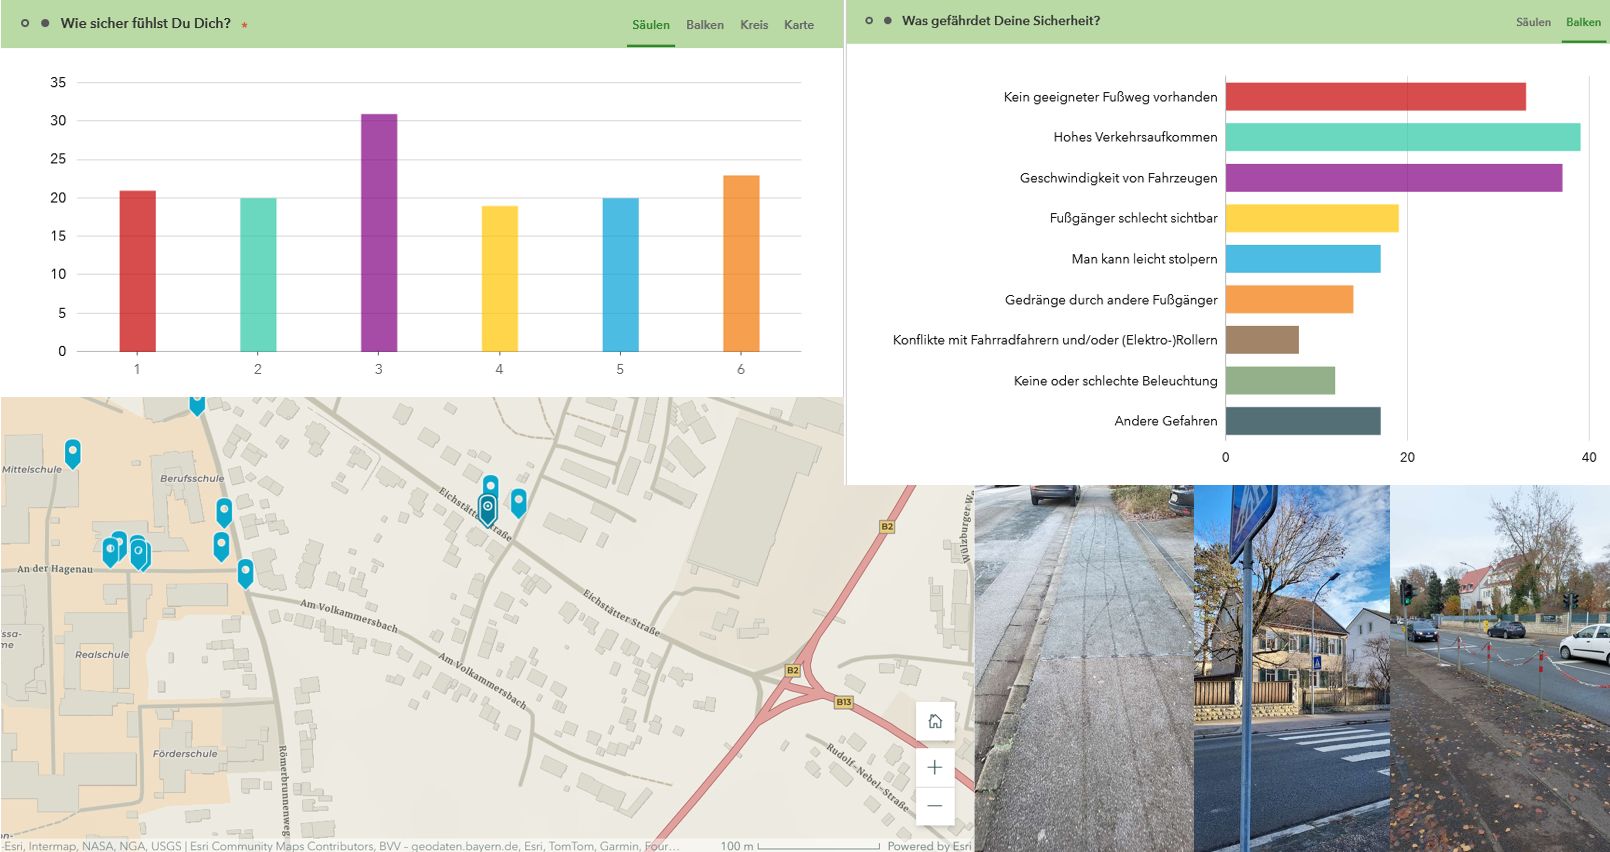 Bewertung der Fußgängerfreundlichkeit von Schulwegen in Weißenburg mit Hilfe einer SmartPhone App